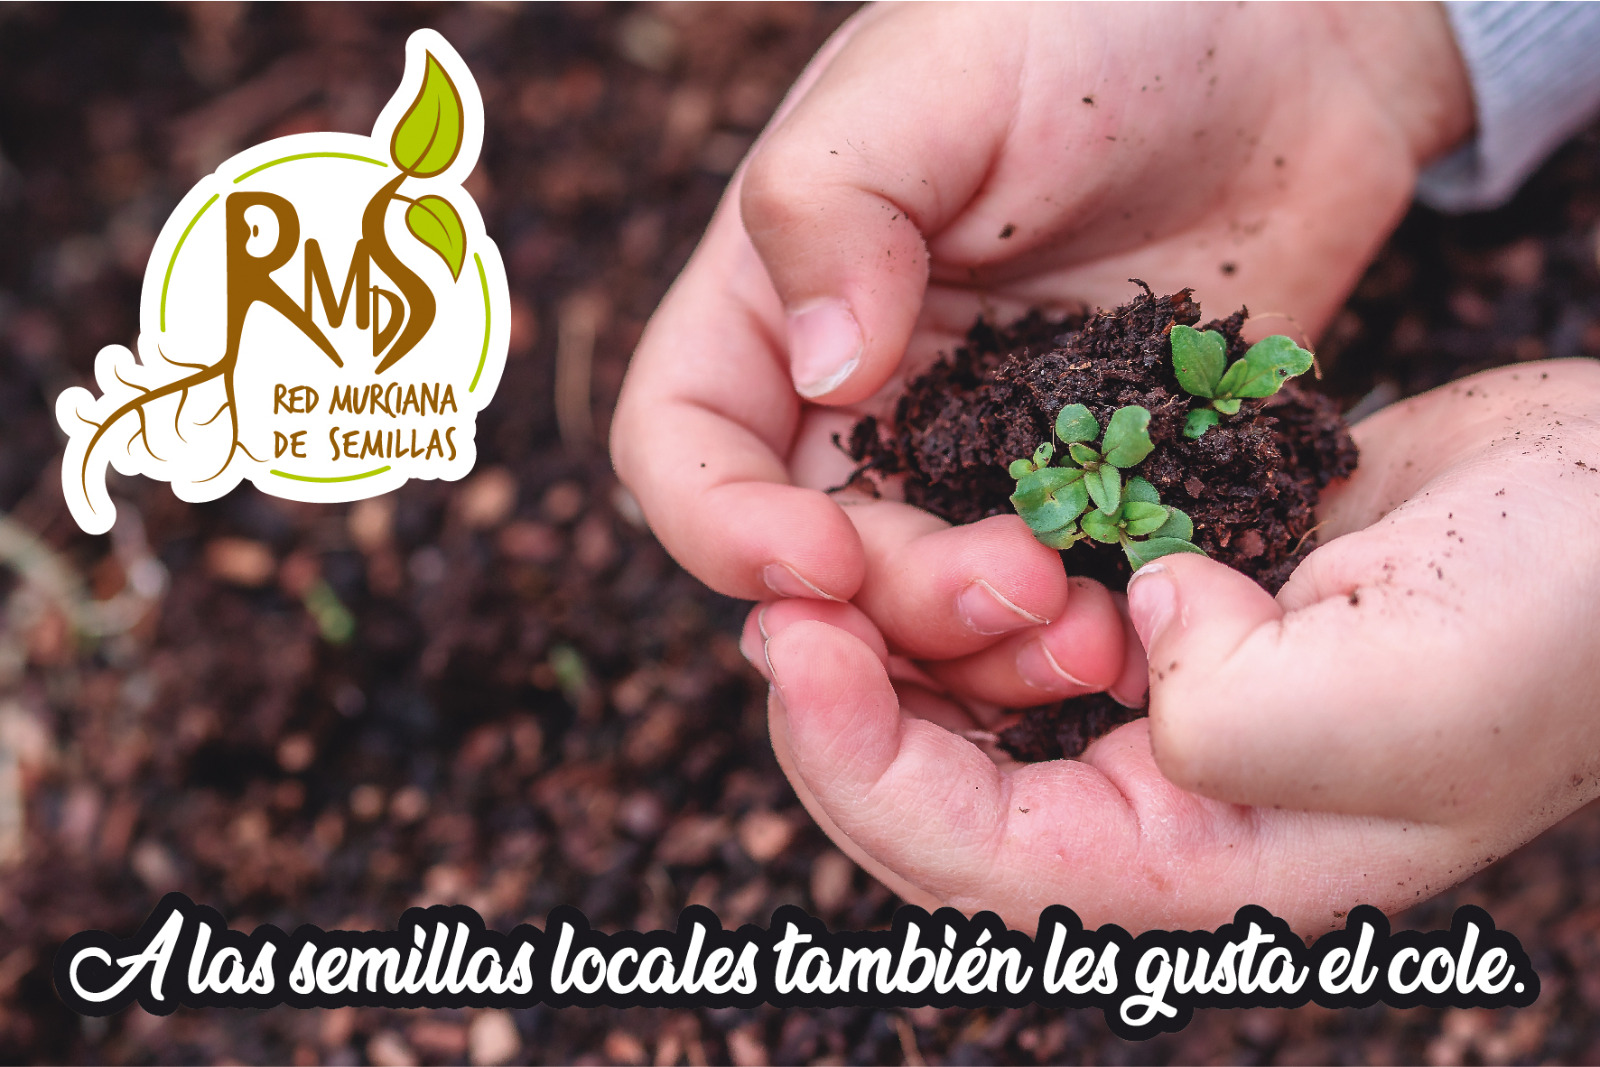 Reparto de semillas de variedades locales a centros escolares, con la Red Murciana de Semillas